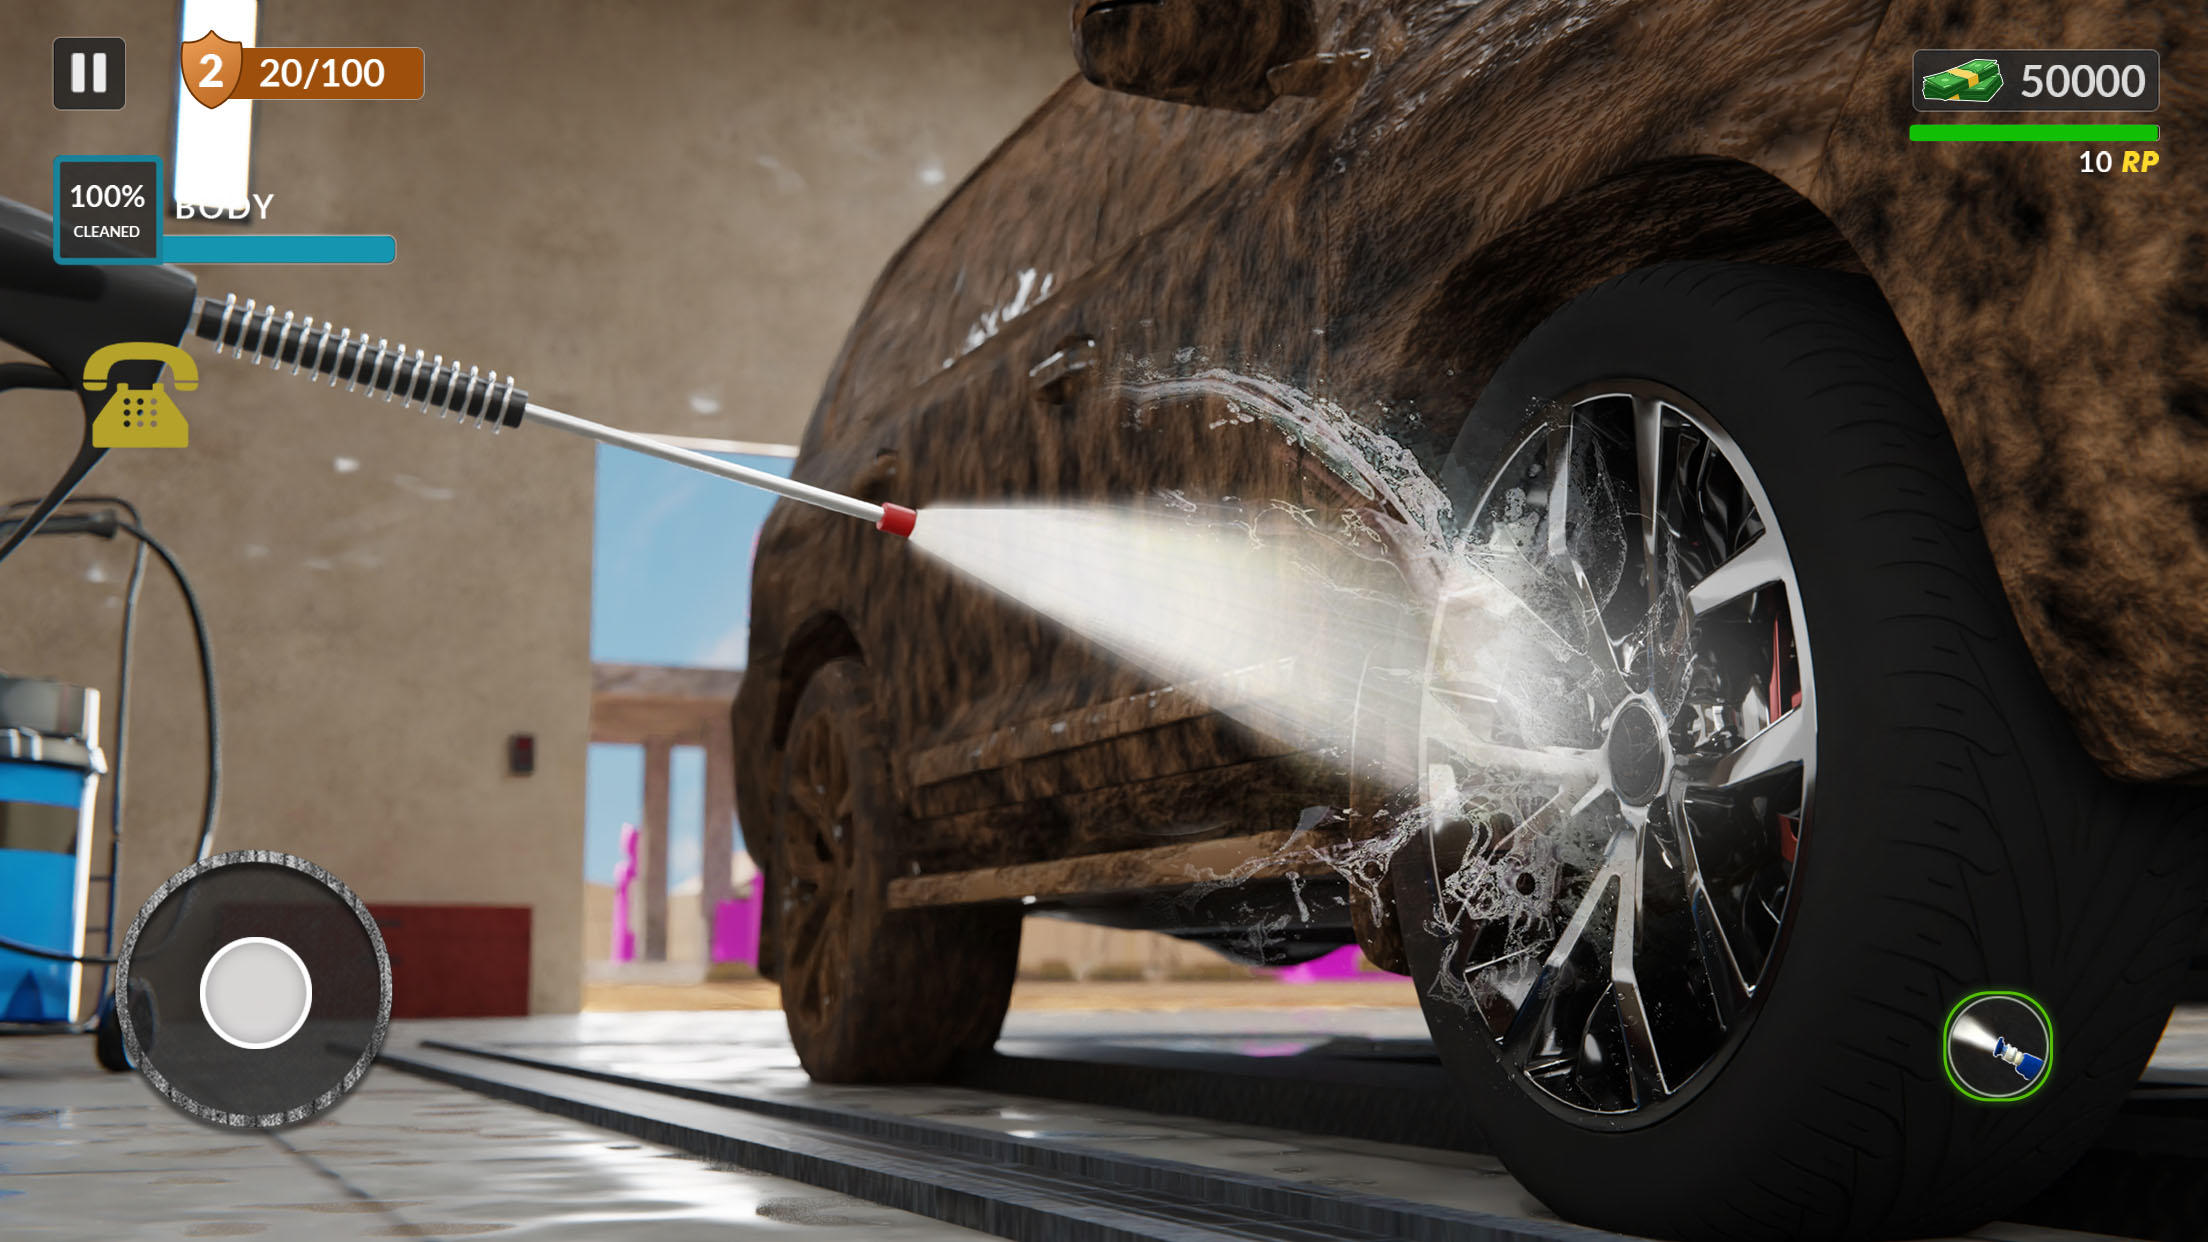 Screenshot 1 of Power Washing - Игры для автомойки 1.9